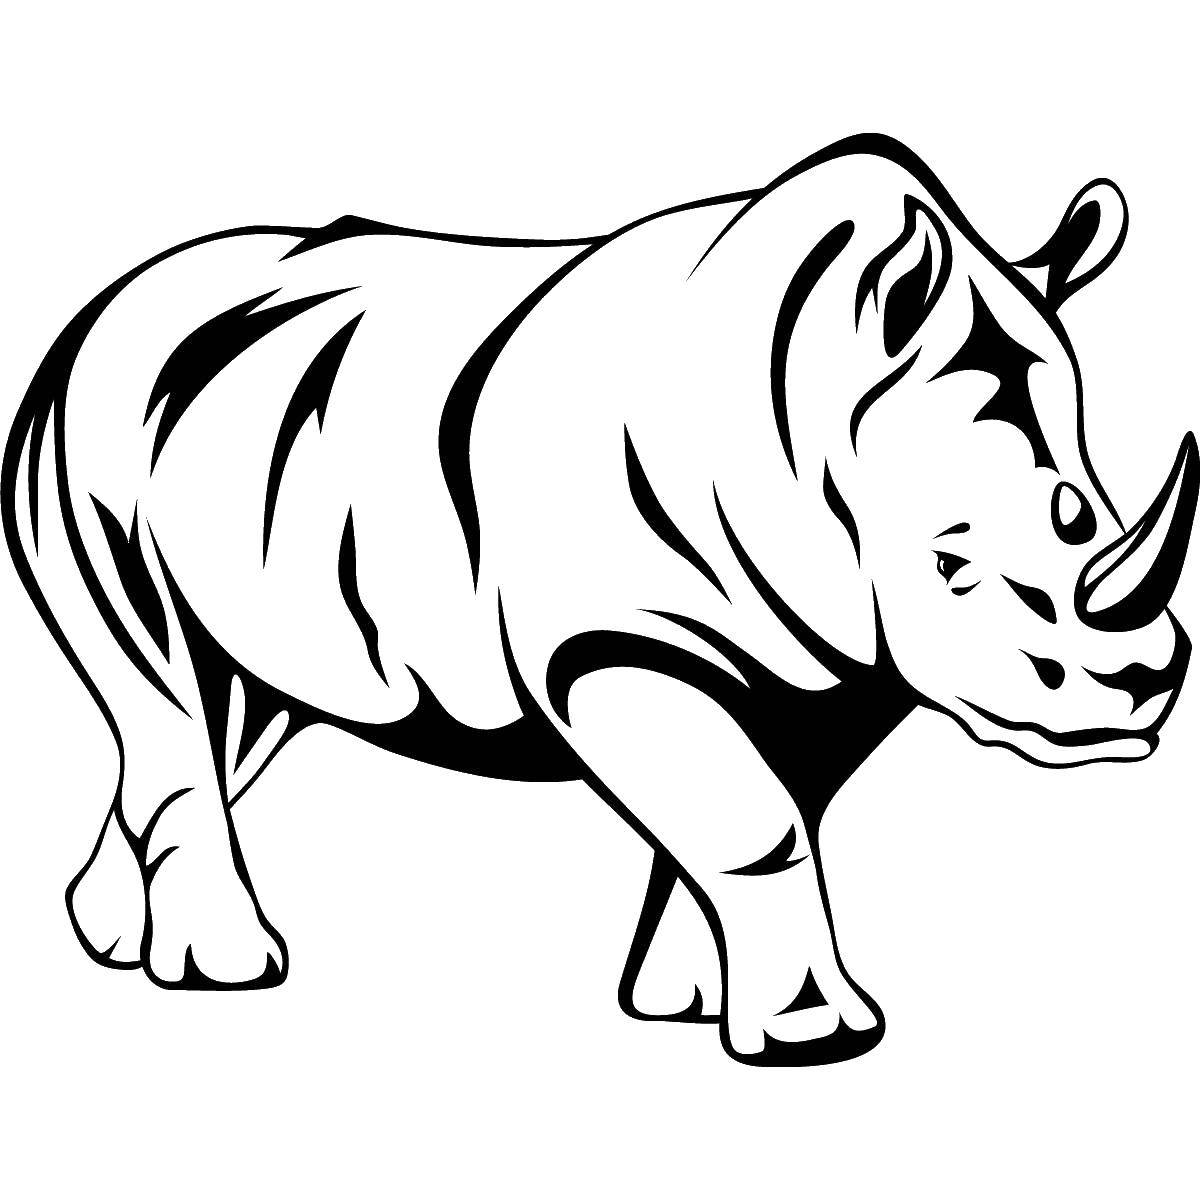 Название: Раскраска Крупный носорог. Категория: Животные. Теги: Животные, носорог.